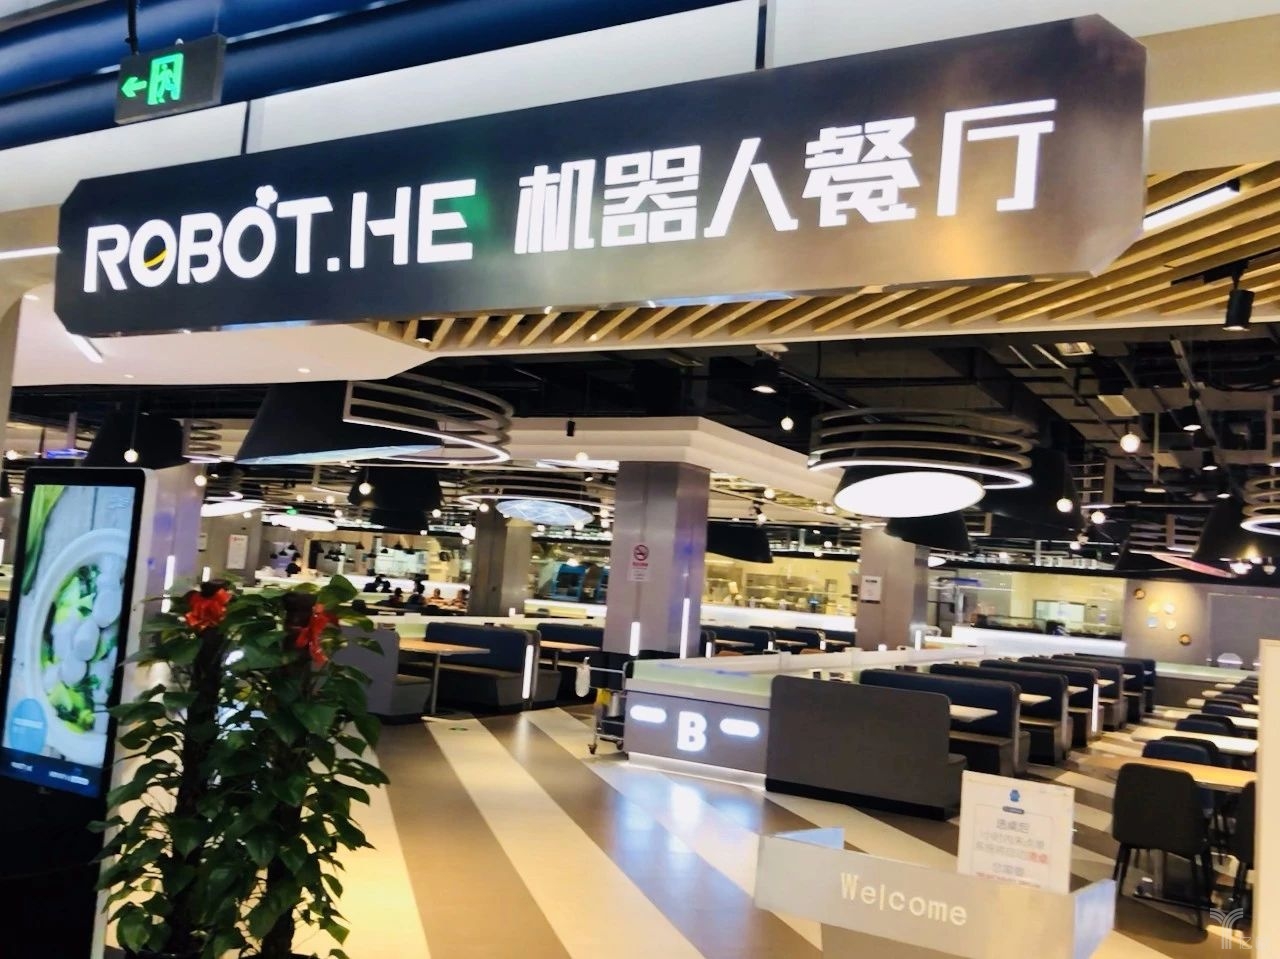 阿里,京东等机器人餐厅